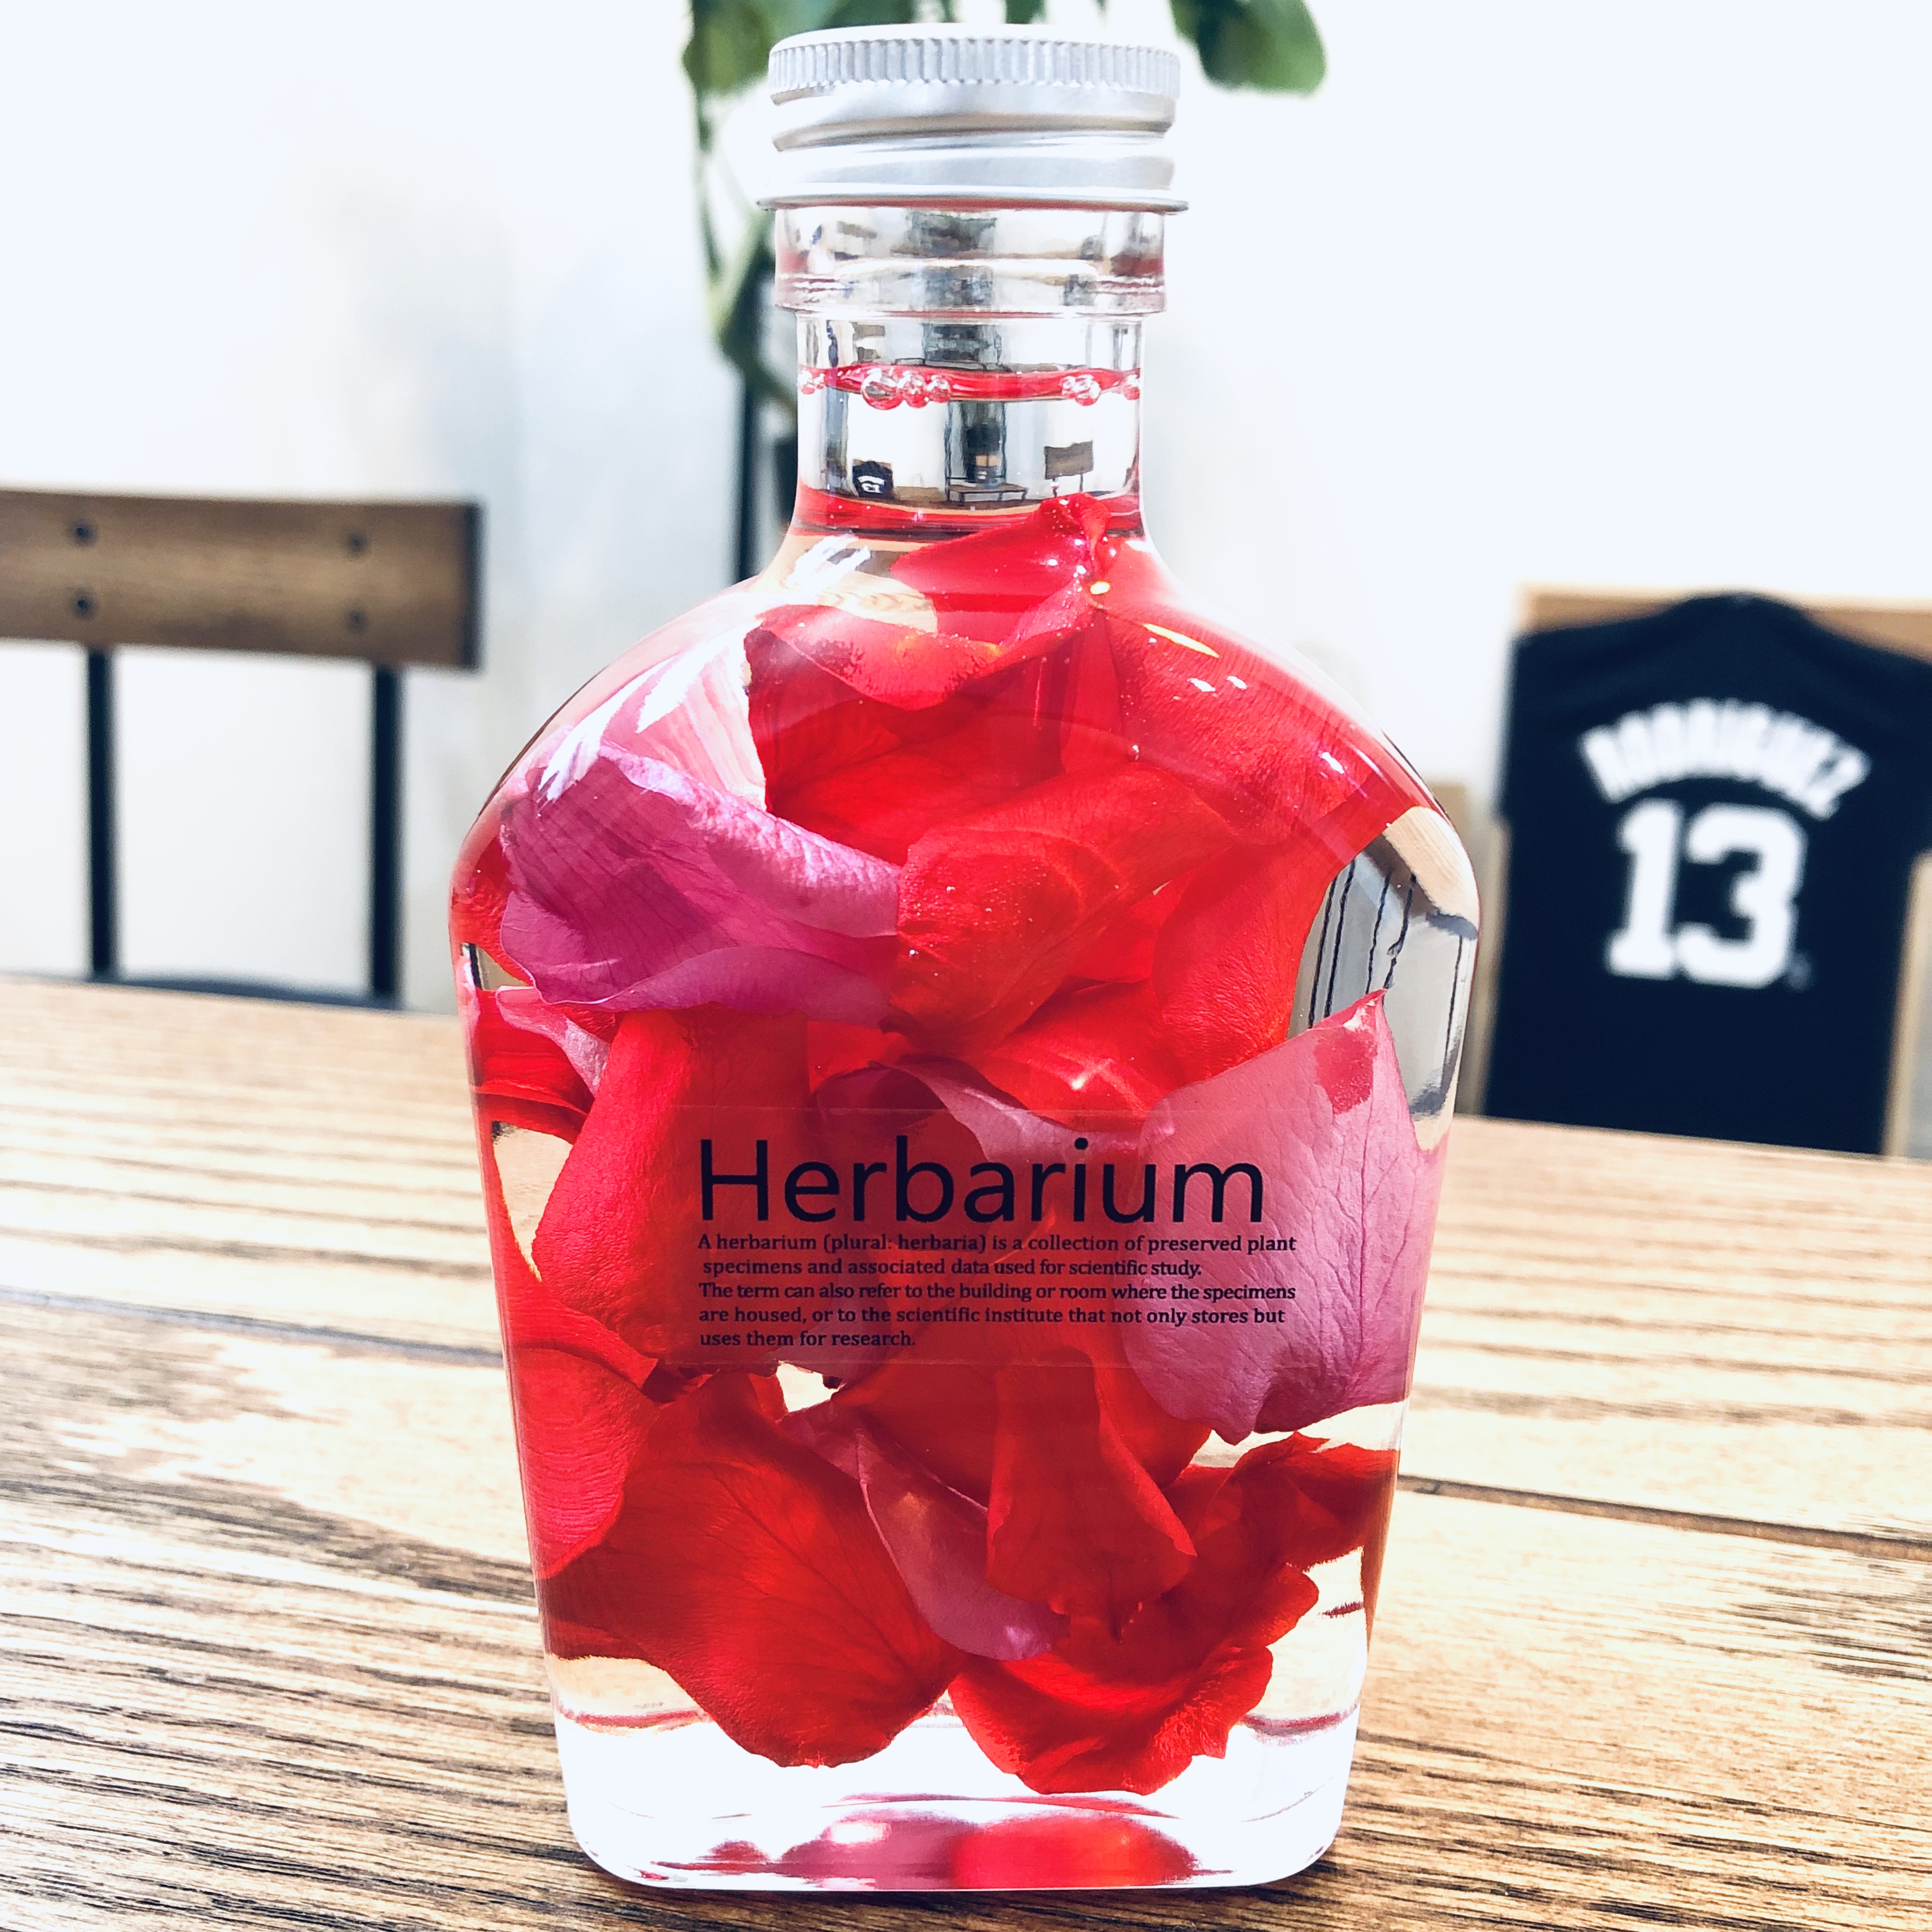 Herbarium roseシリーズNEW❗️